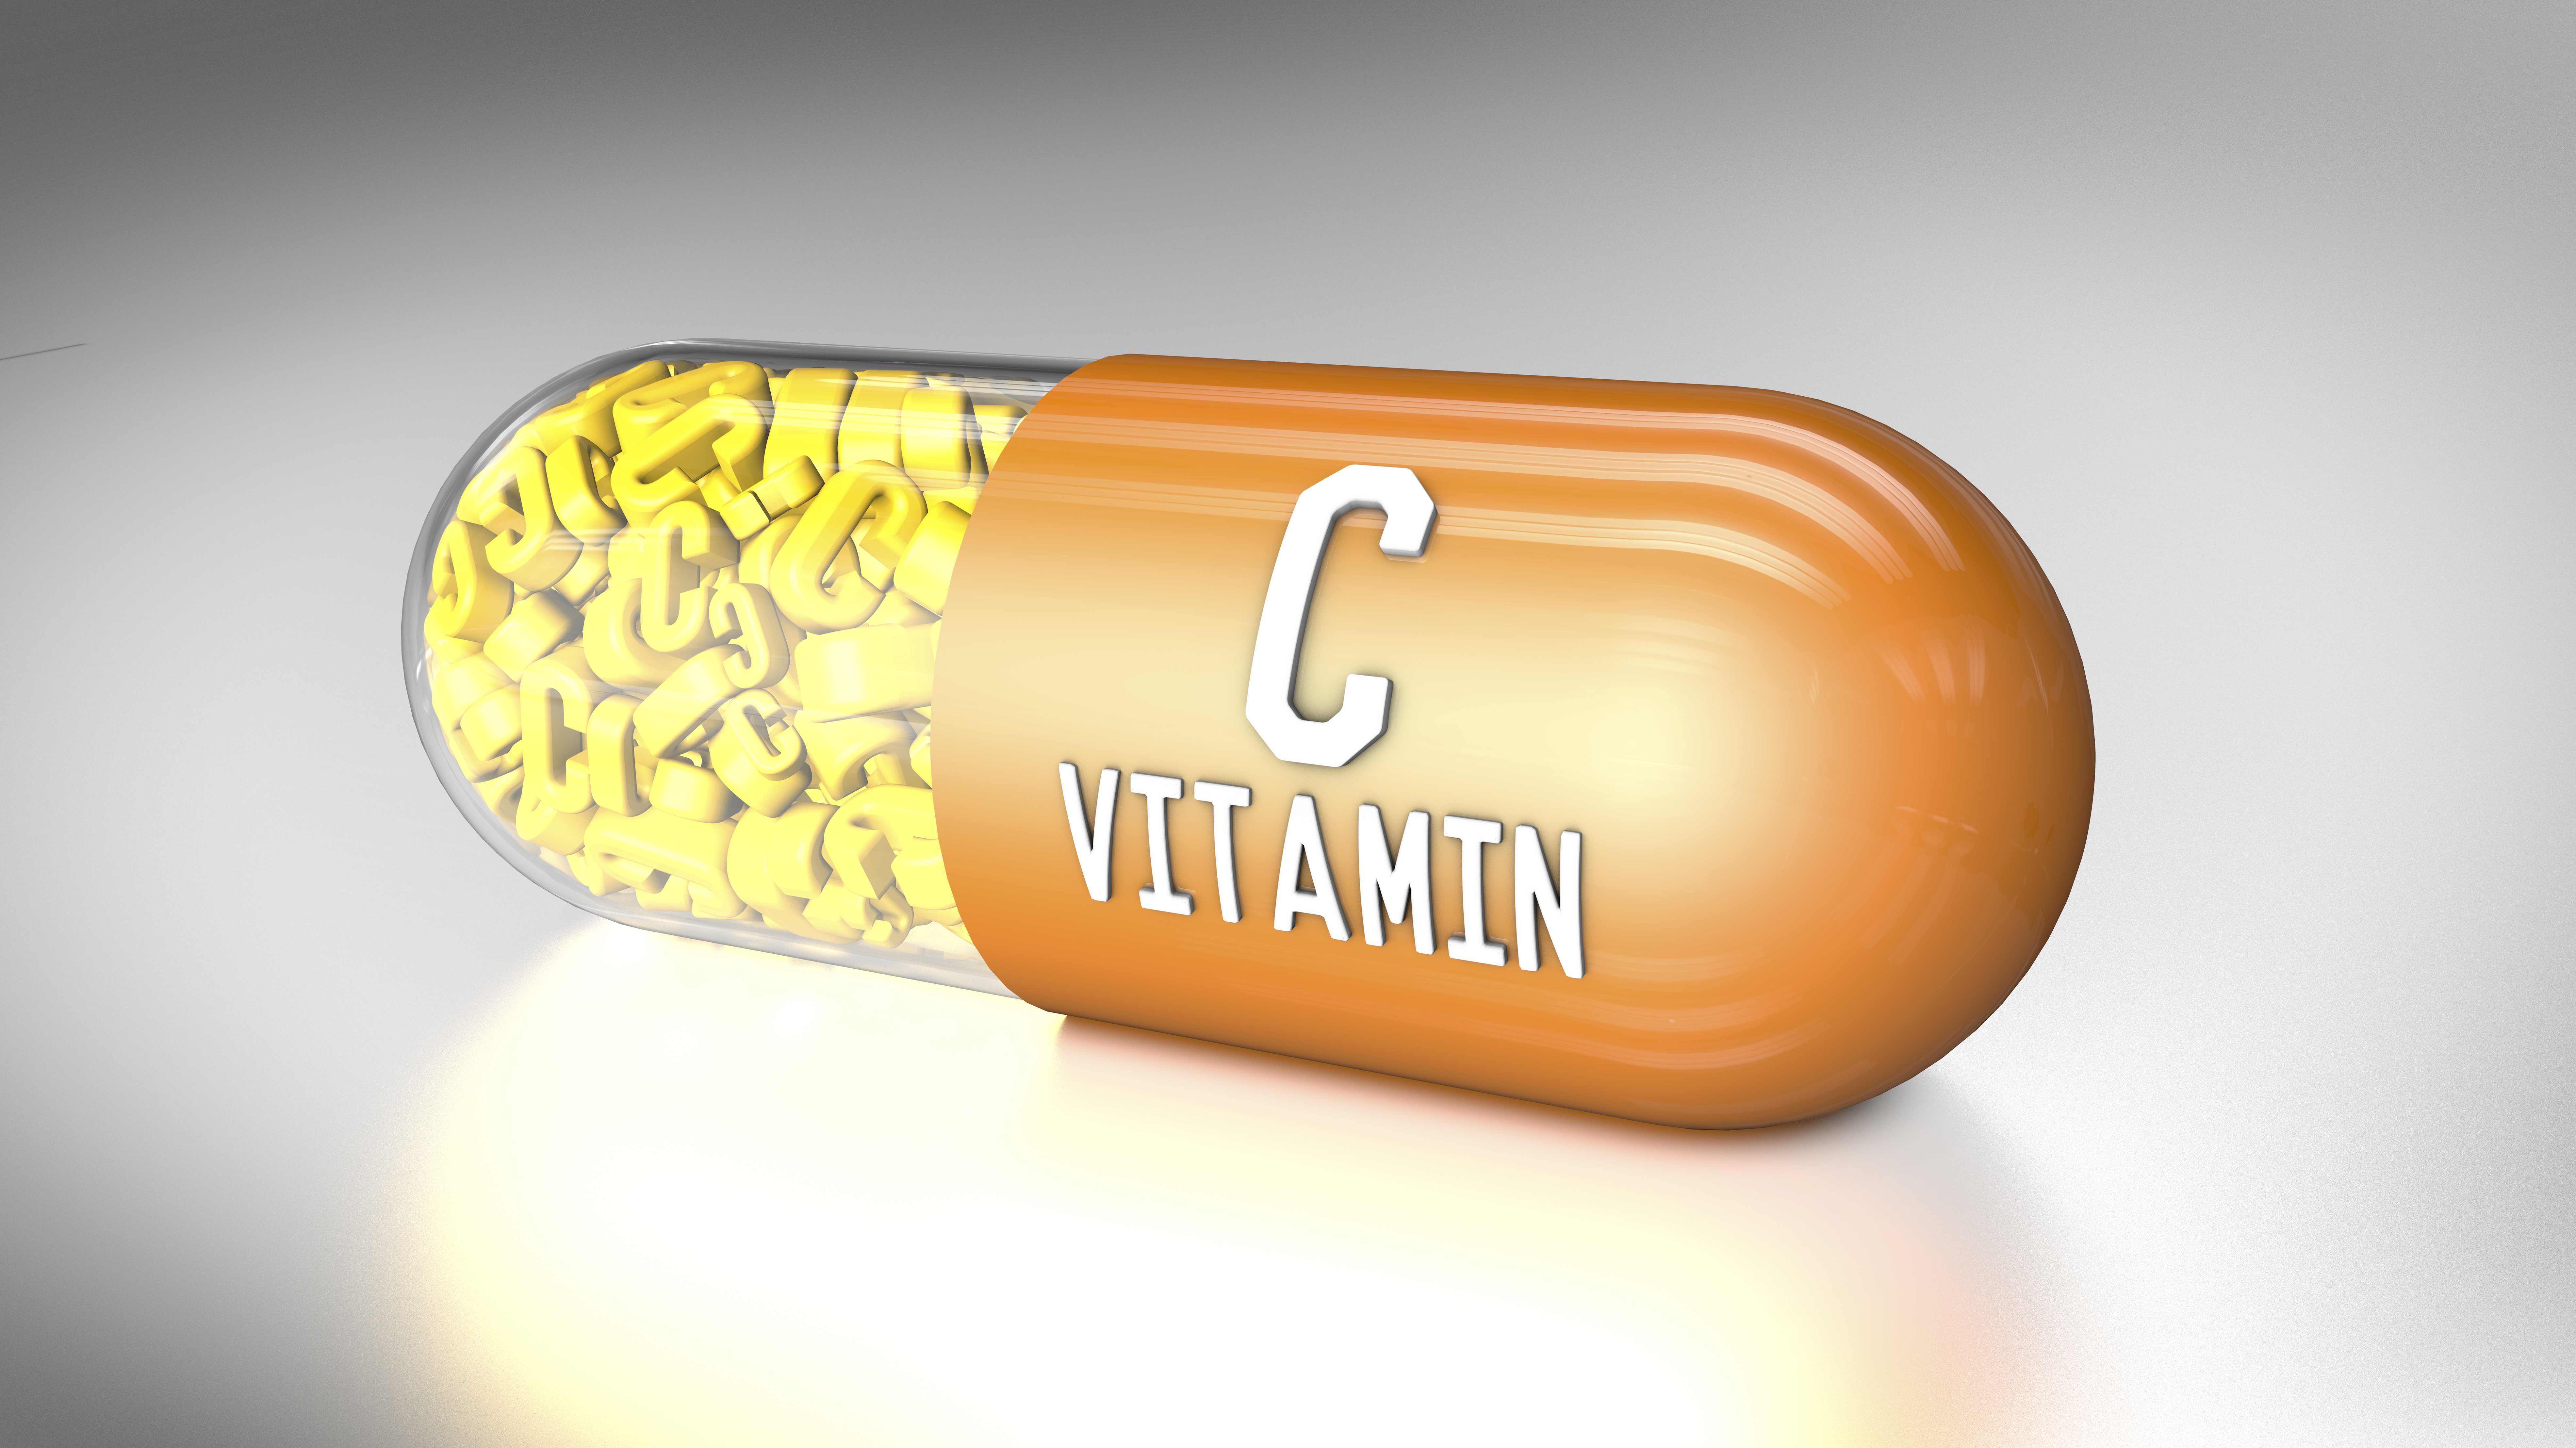 Ártani nem árt, de egyelőre nincs bizonyíték arra, hogy a C-vitamin segít legyőzni a koronavírust